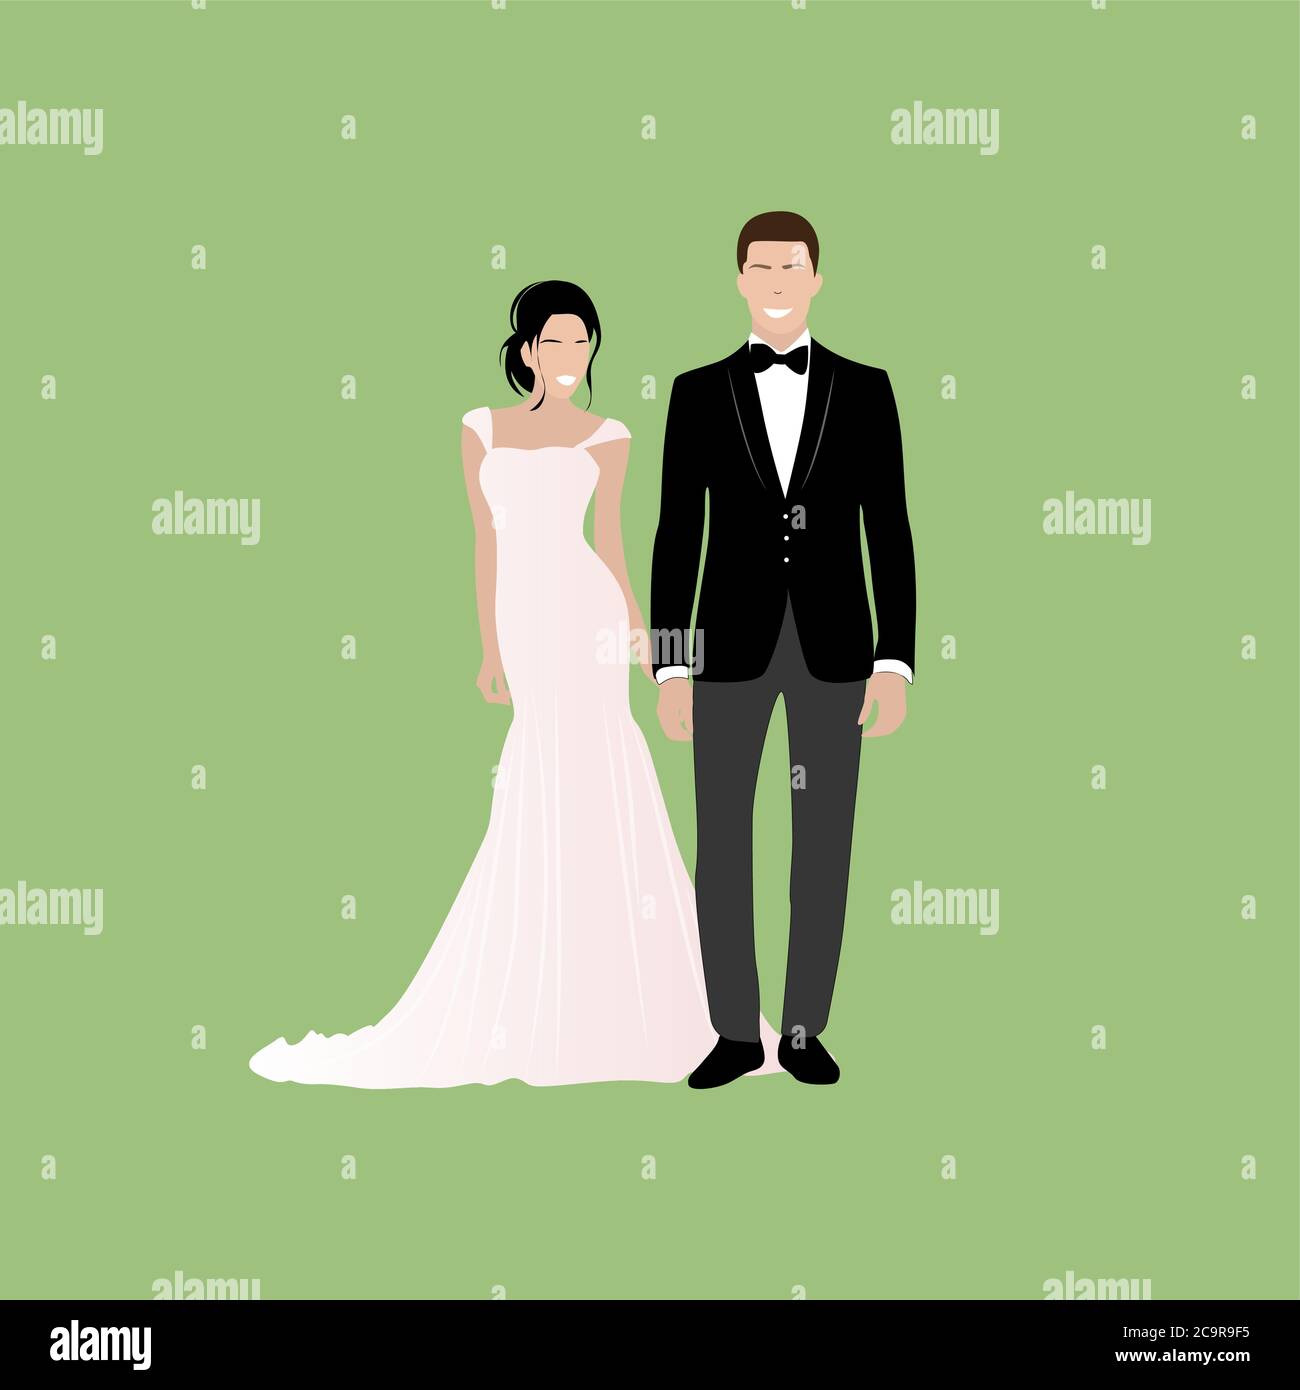 Ehepaar heiraten, glückliche Braut und Bräutigam. Liebe glücklich Hochzeit, Paar Frau und Frau Ehe Illustration Stock Vektor